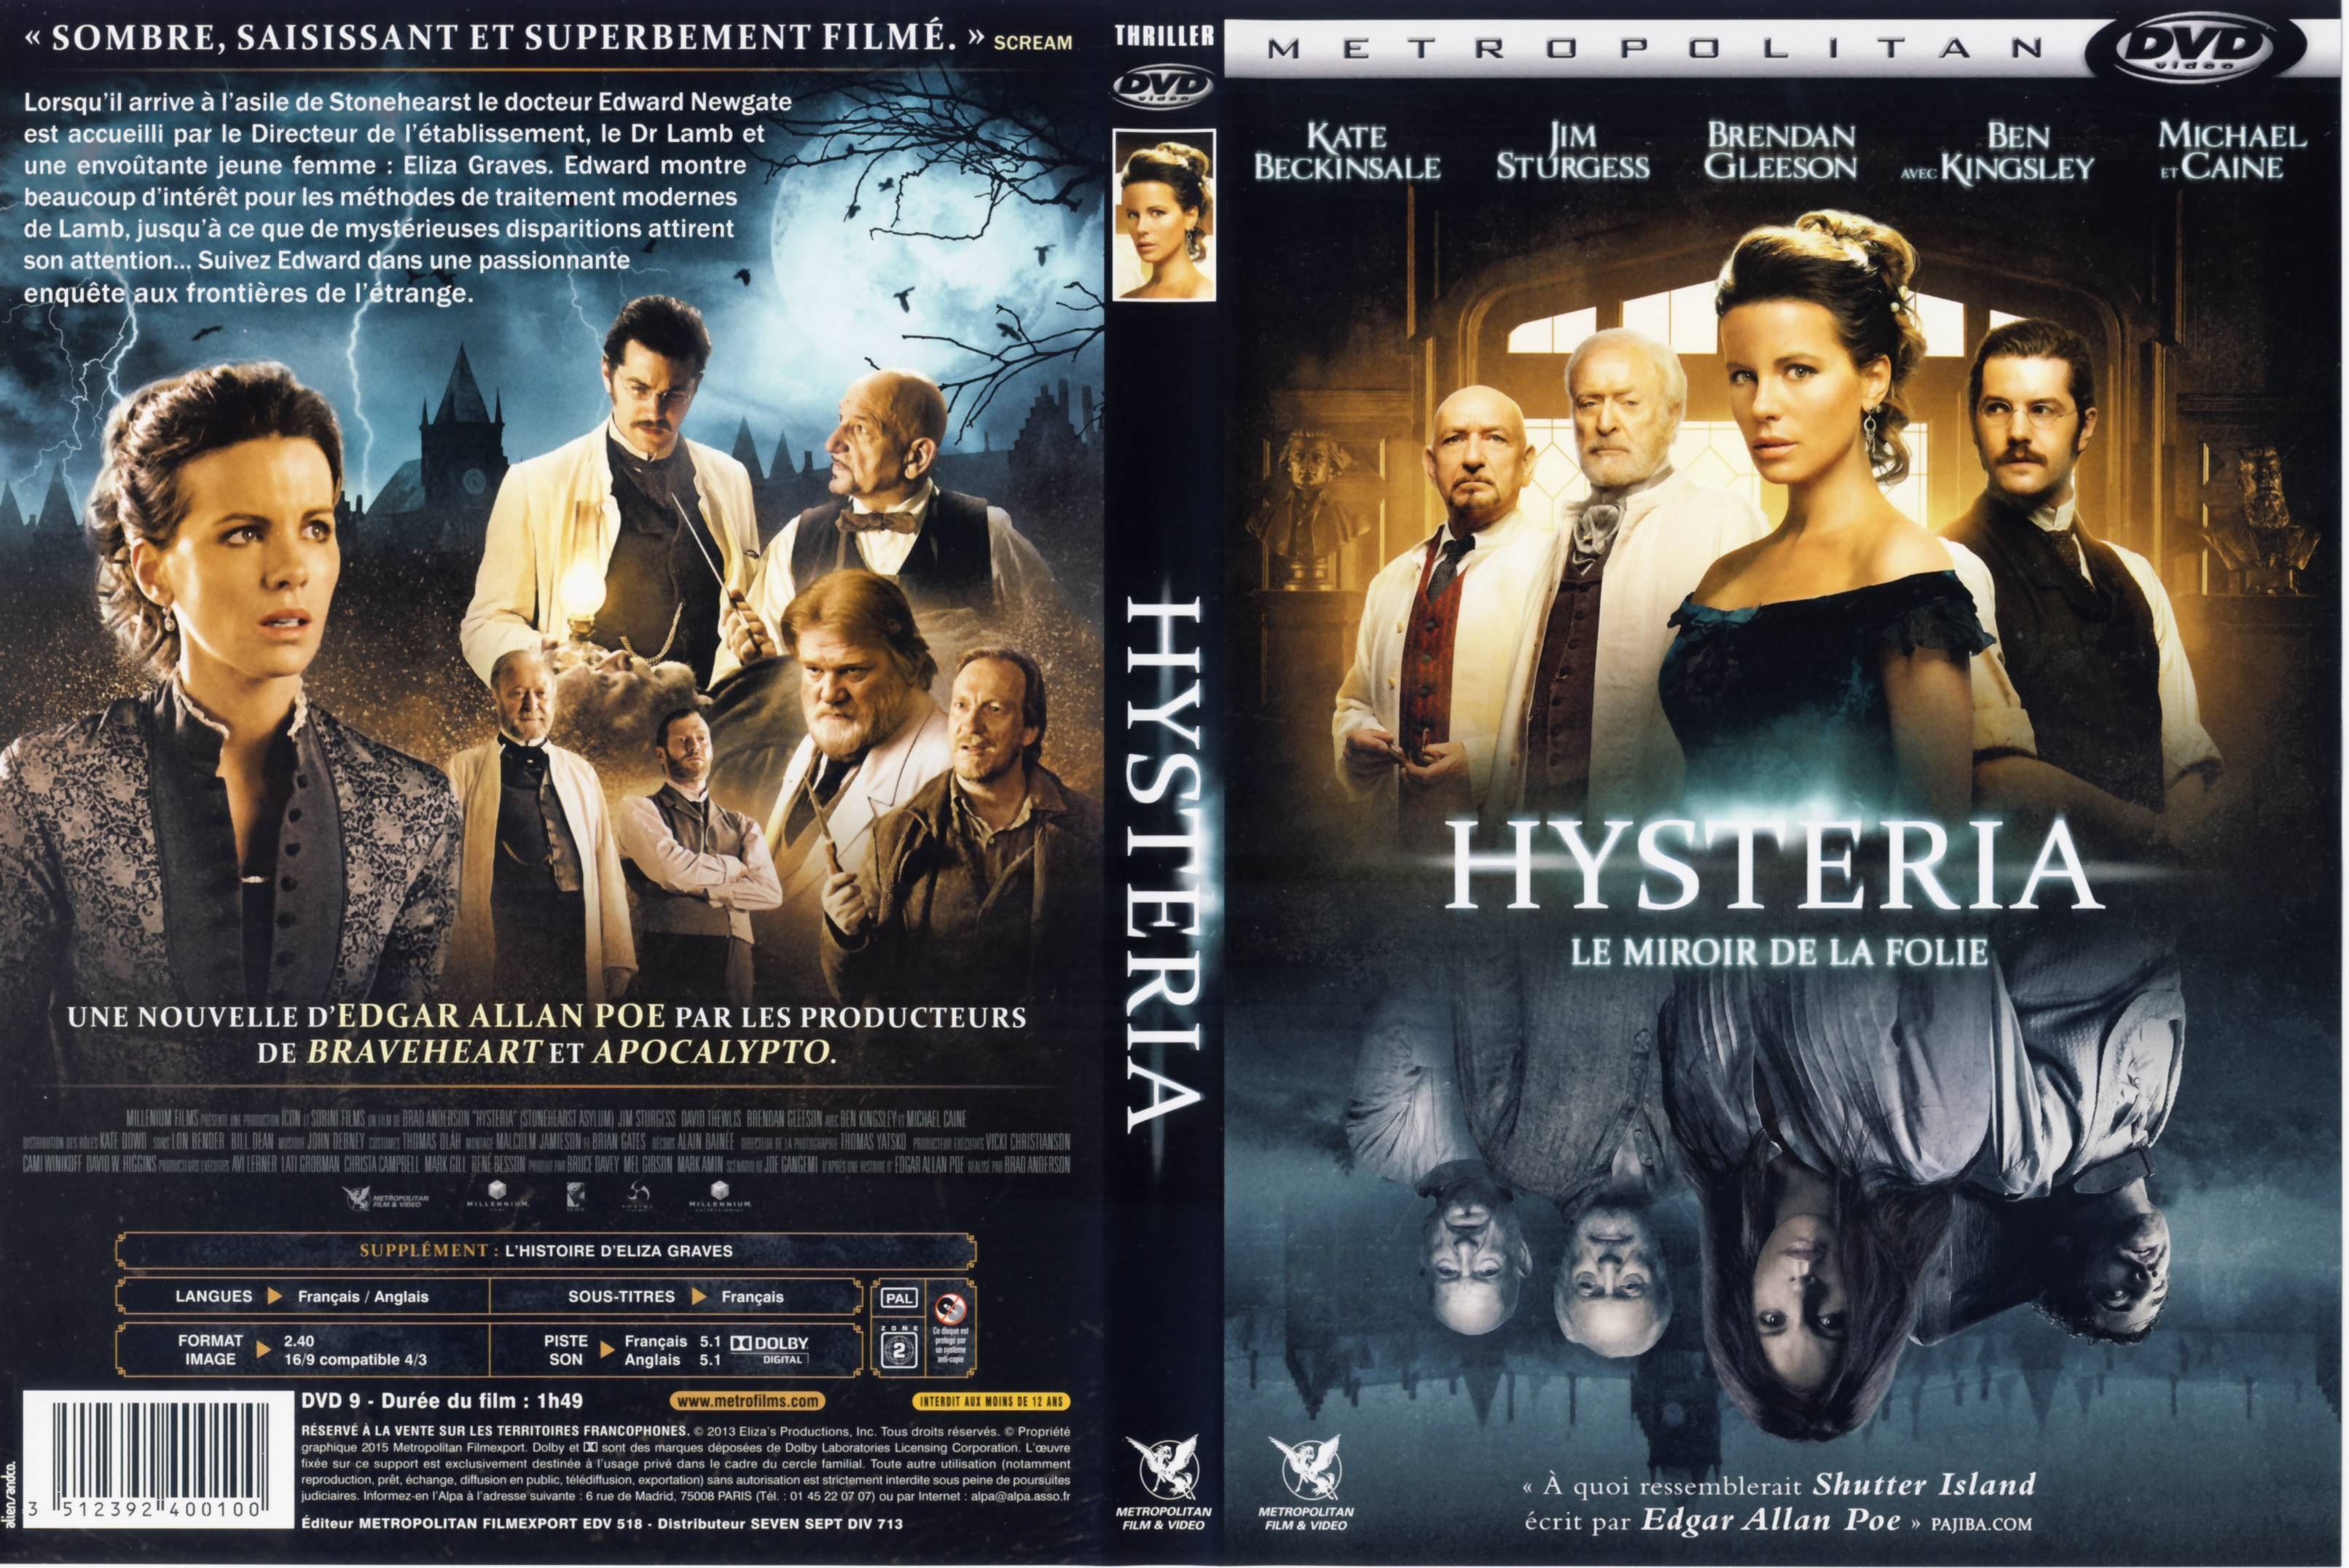 Jaquette DVD Hysteria